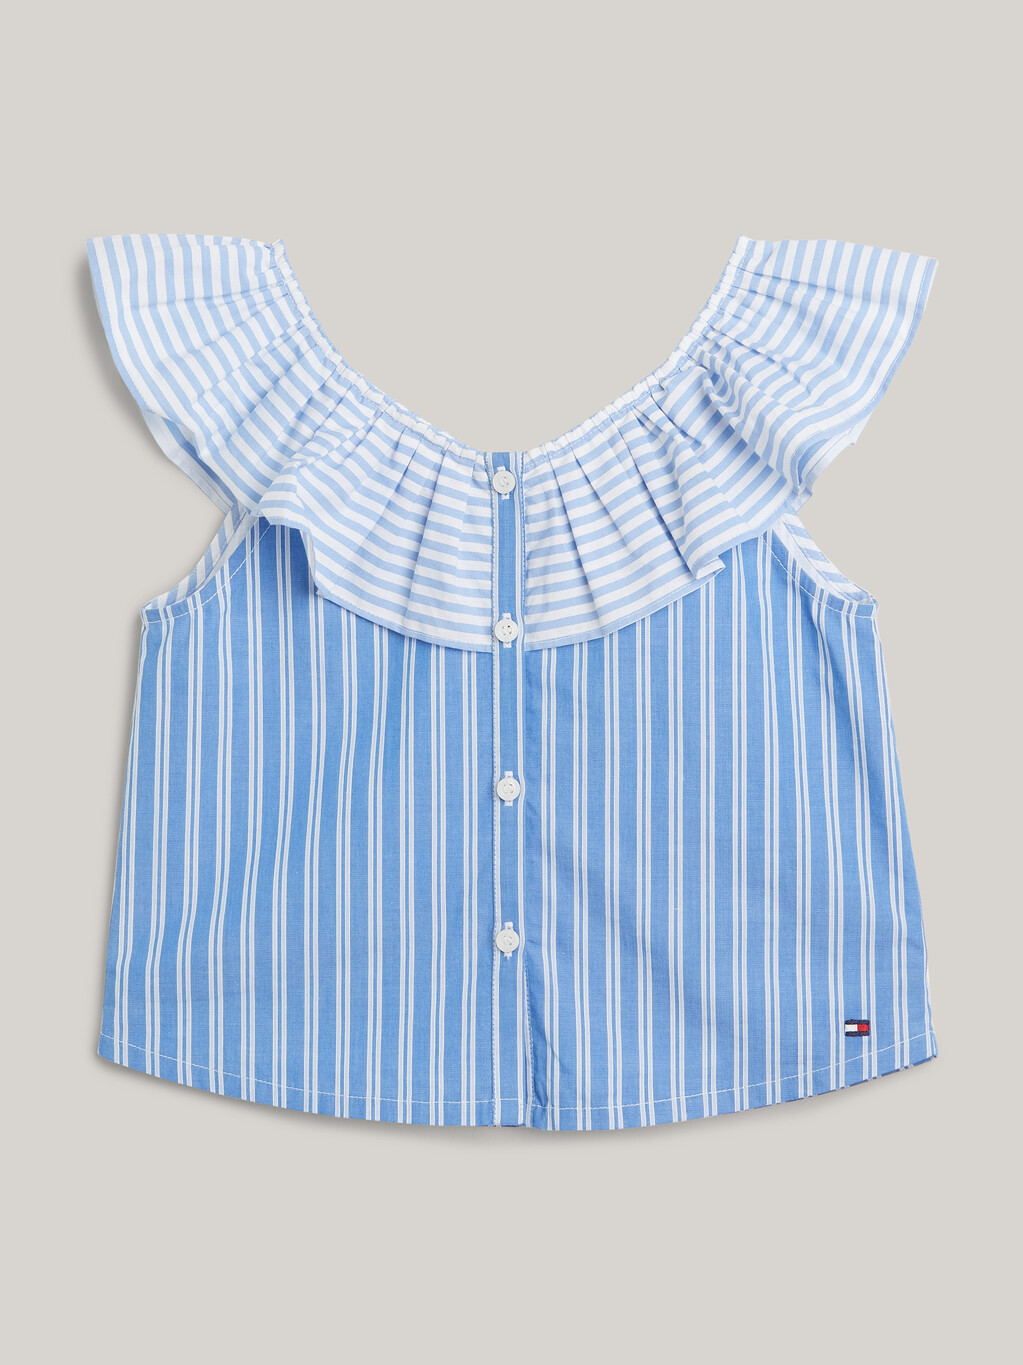 混合條紋褶邊領口短上衣, Blue Spell Stripe / White, hi-res